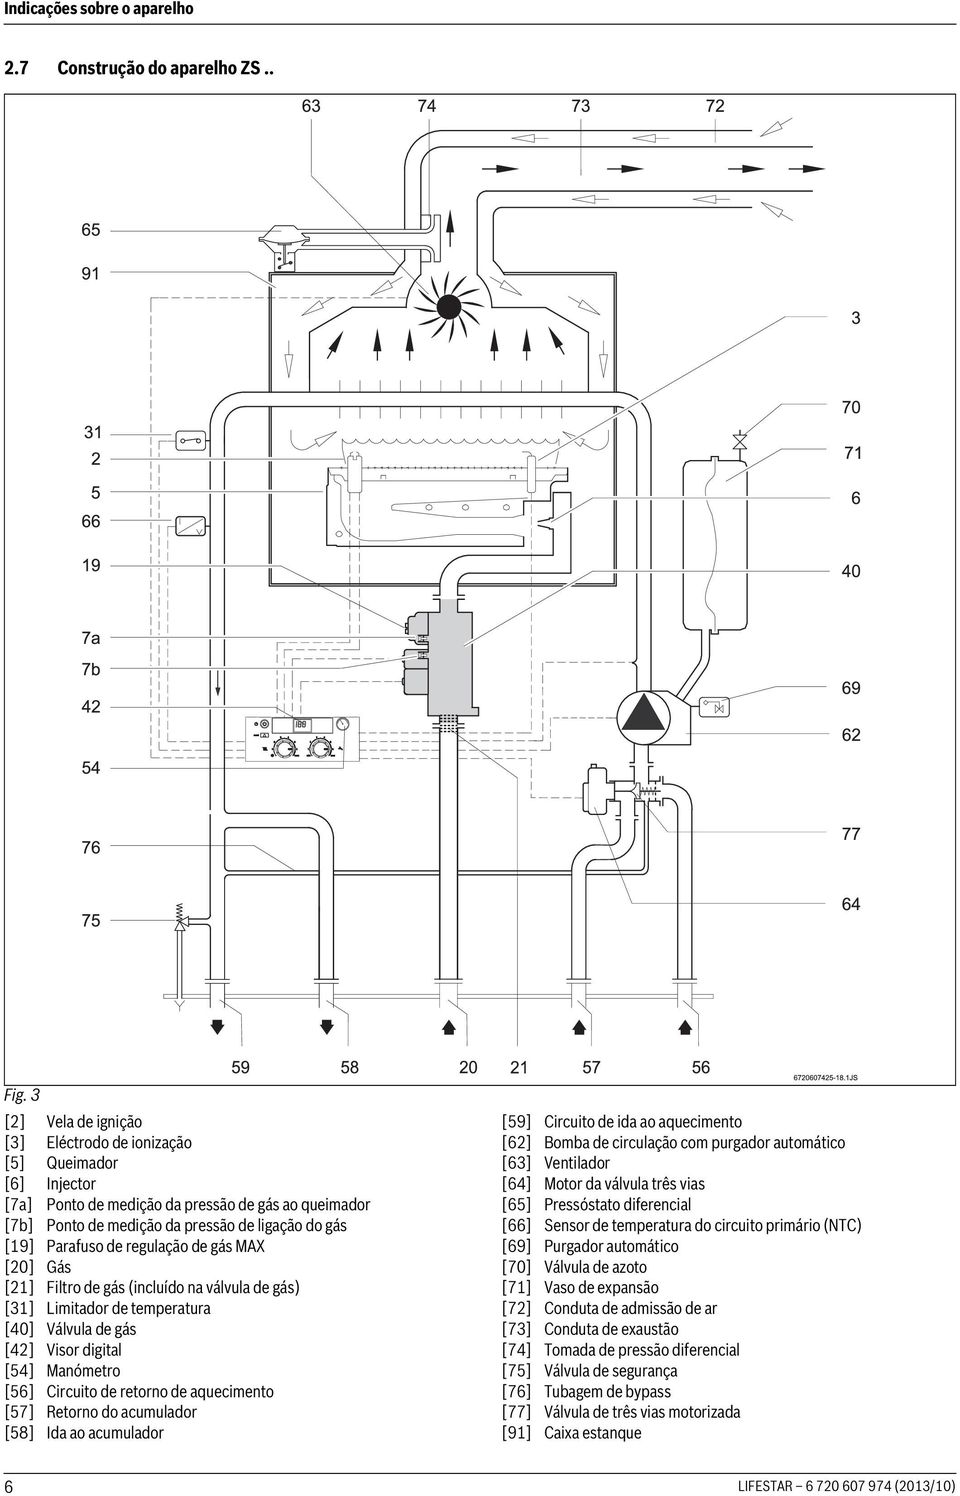 regulação de gás MAX [20] Gás [21] Filtro de gás (incluído na válvula de gás) [31] Limitador de temperatura [40] Válvula de gás [42] Visor digital [54] Manómetro [56] Circuito de retorno de